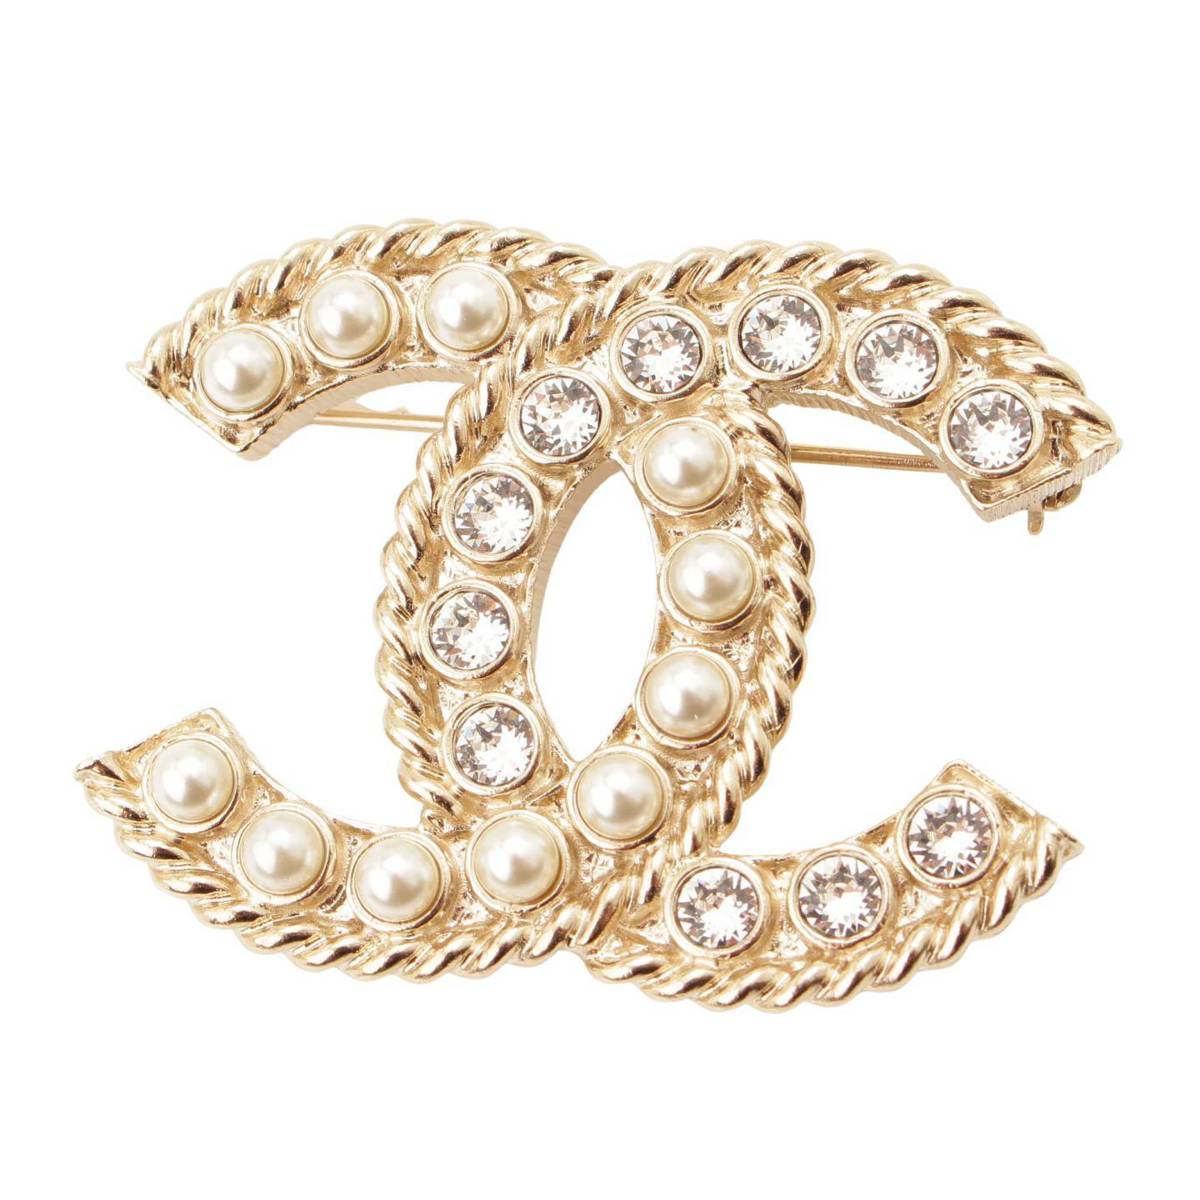 シャネル(Chanel) B20S ココマーク フェイクパール ラインストーン ピンブローチ ゴールド